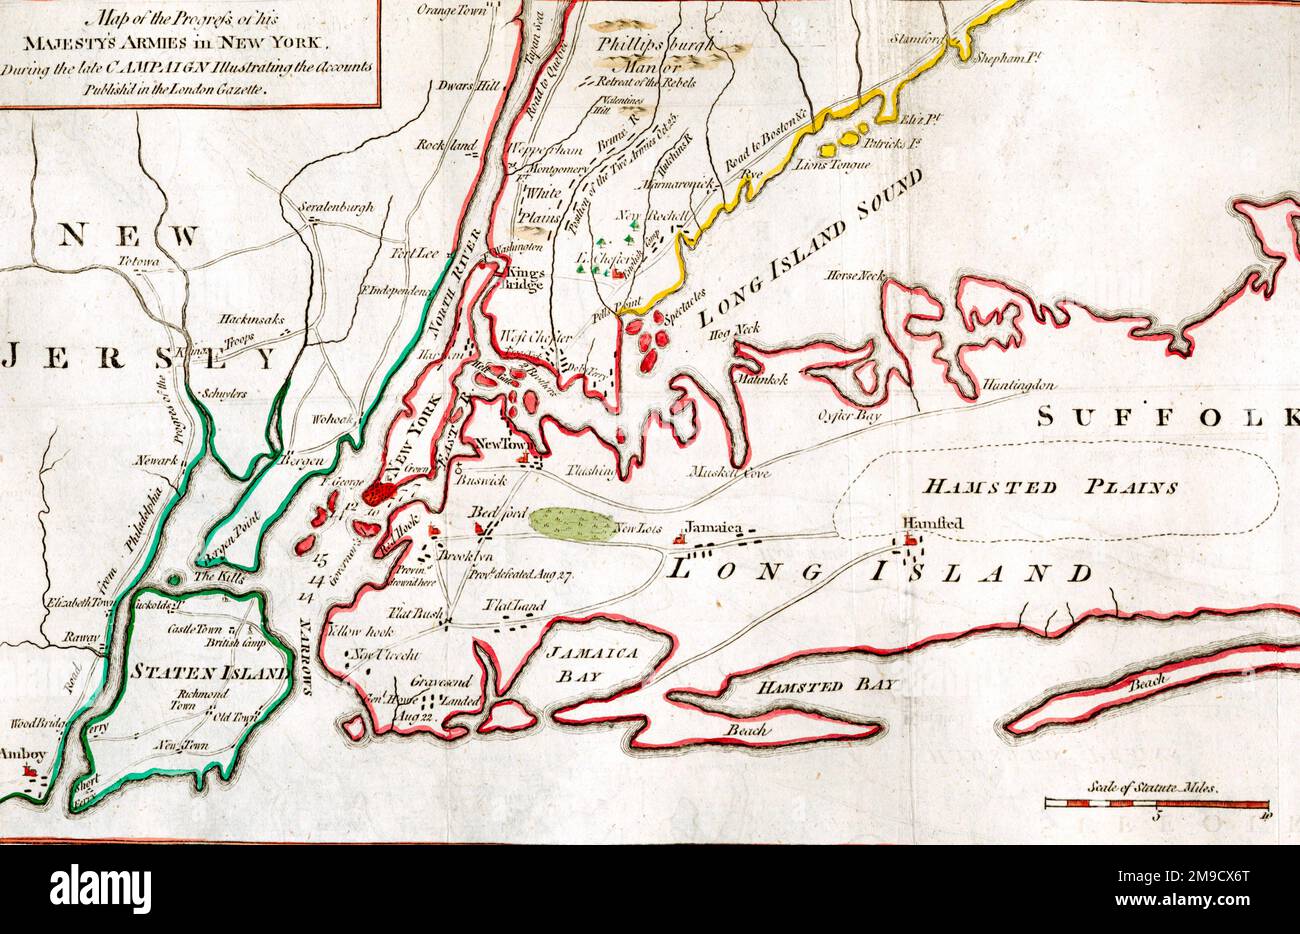 Mappa del progresso degli eserciti di sua Maestà a New York, durante la tarda Campagna - Guerra d'Indipendenza rivoluzionaria americana Foto Stock